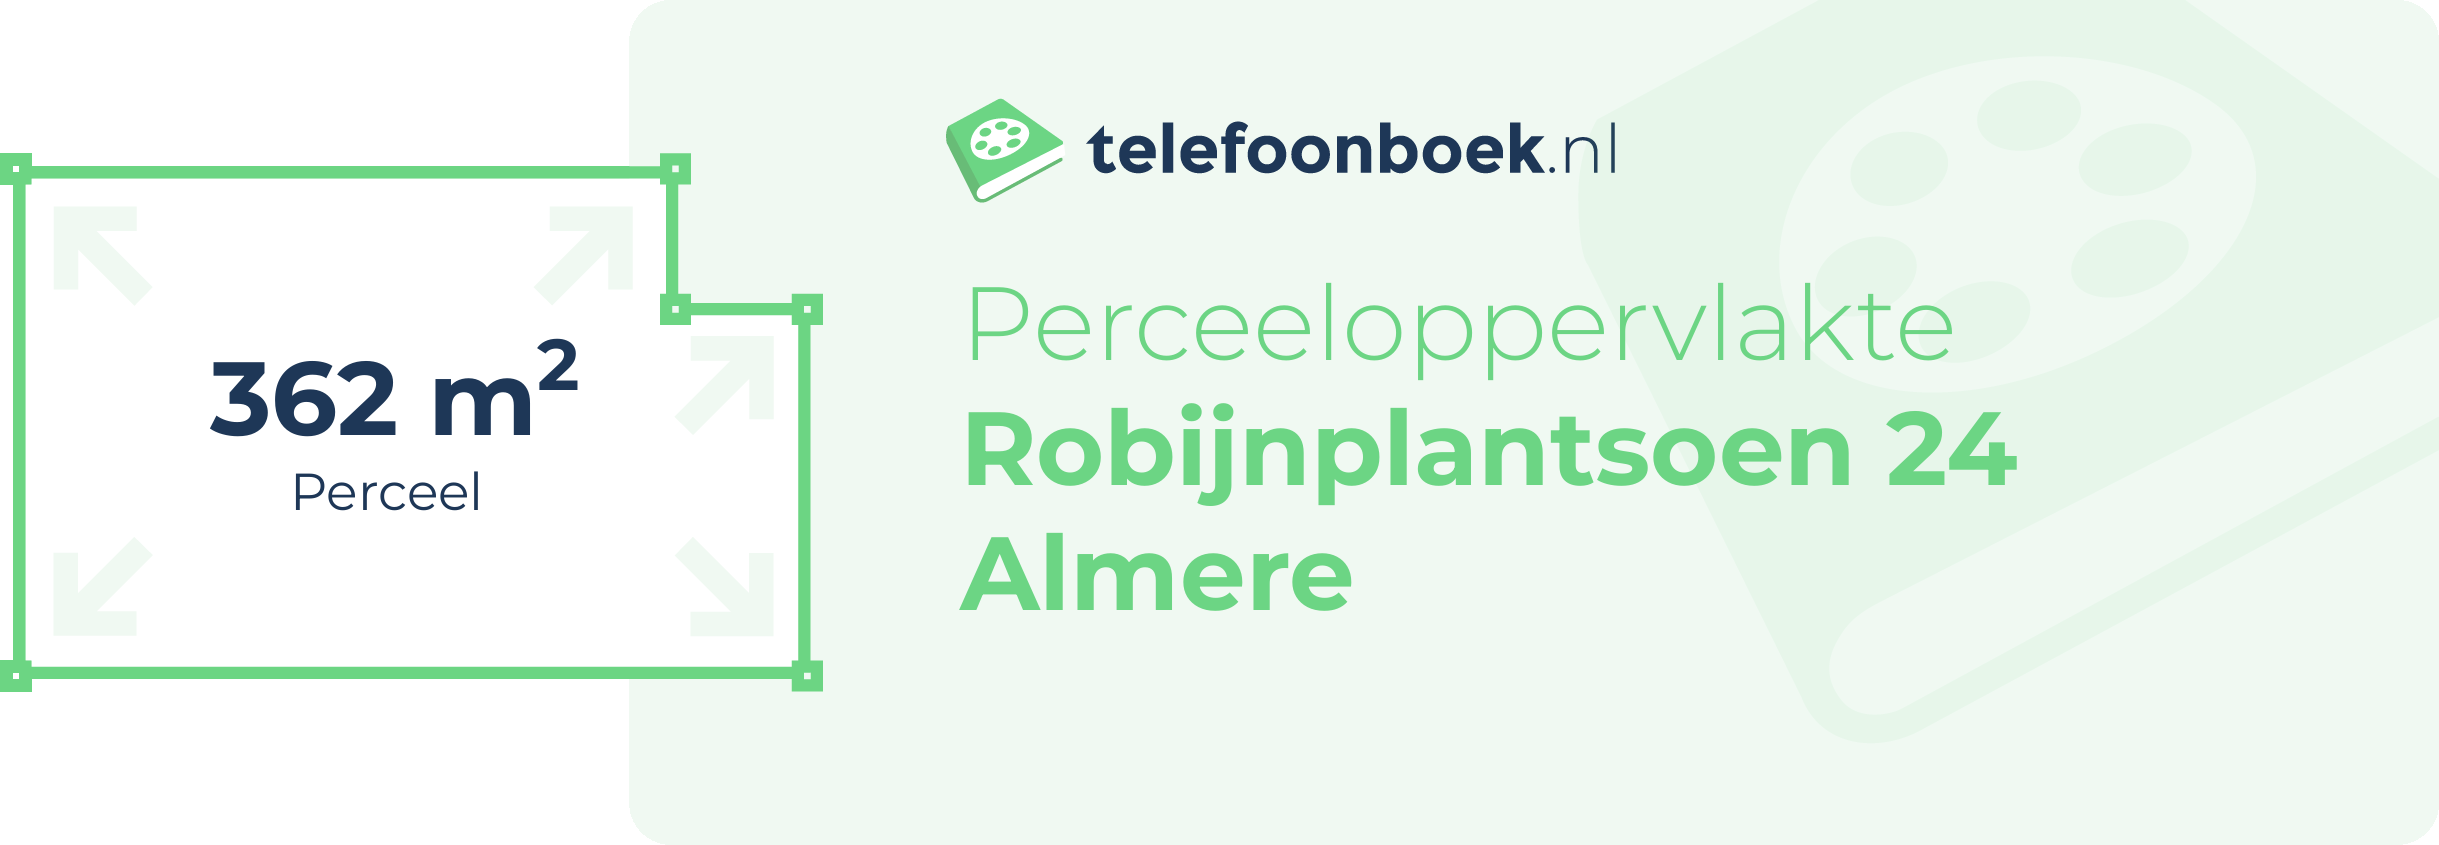 Perceeloppervlakte Robijnplantsoen 24 Almere